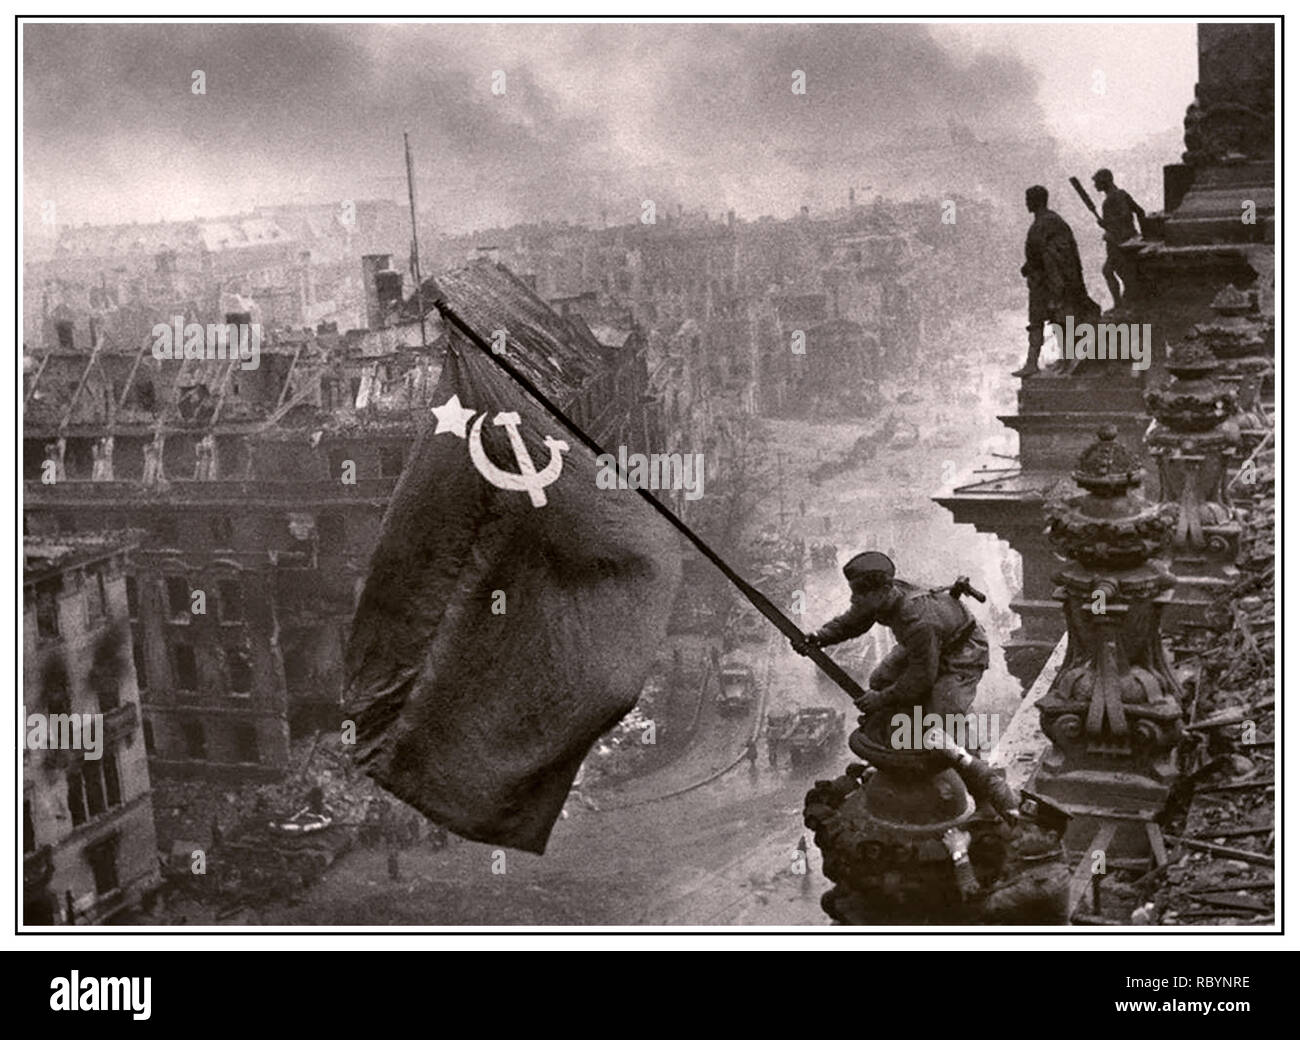 ESERCITO RUSSO BANDIERA SOVIETICA SOPRA BERLINO NAZISTA REICHSTAG SECONDA GUERRA MONDIALE GERMANIA. Immagine iconica di innalzare una bandiera sovietica russa sul Reichstag, una fotografia storica della seconda guerra mondiale, scattata durante la battaglia di Berlino il 2 maggio 1945. Mostra Moriton Kantaria e Mikhail Yegorov innalzando la bandiera Hammer e Sickle sul Reichstag di Berlino con Berlino in rovina alle spalle. Germania WW2 soldati sovietici dell'Armata Rossa bandiera sovietica di Hammer e Sickle sede nazista Reichstag, Berlino Germania 1945 Foto Stock